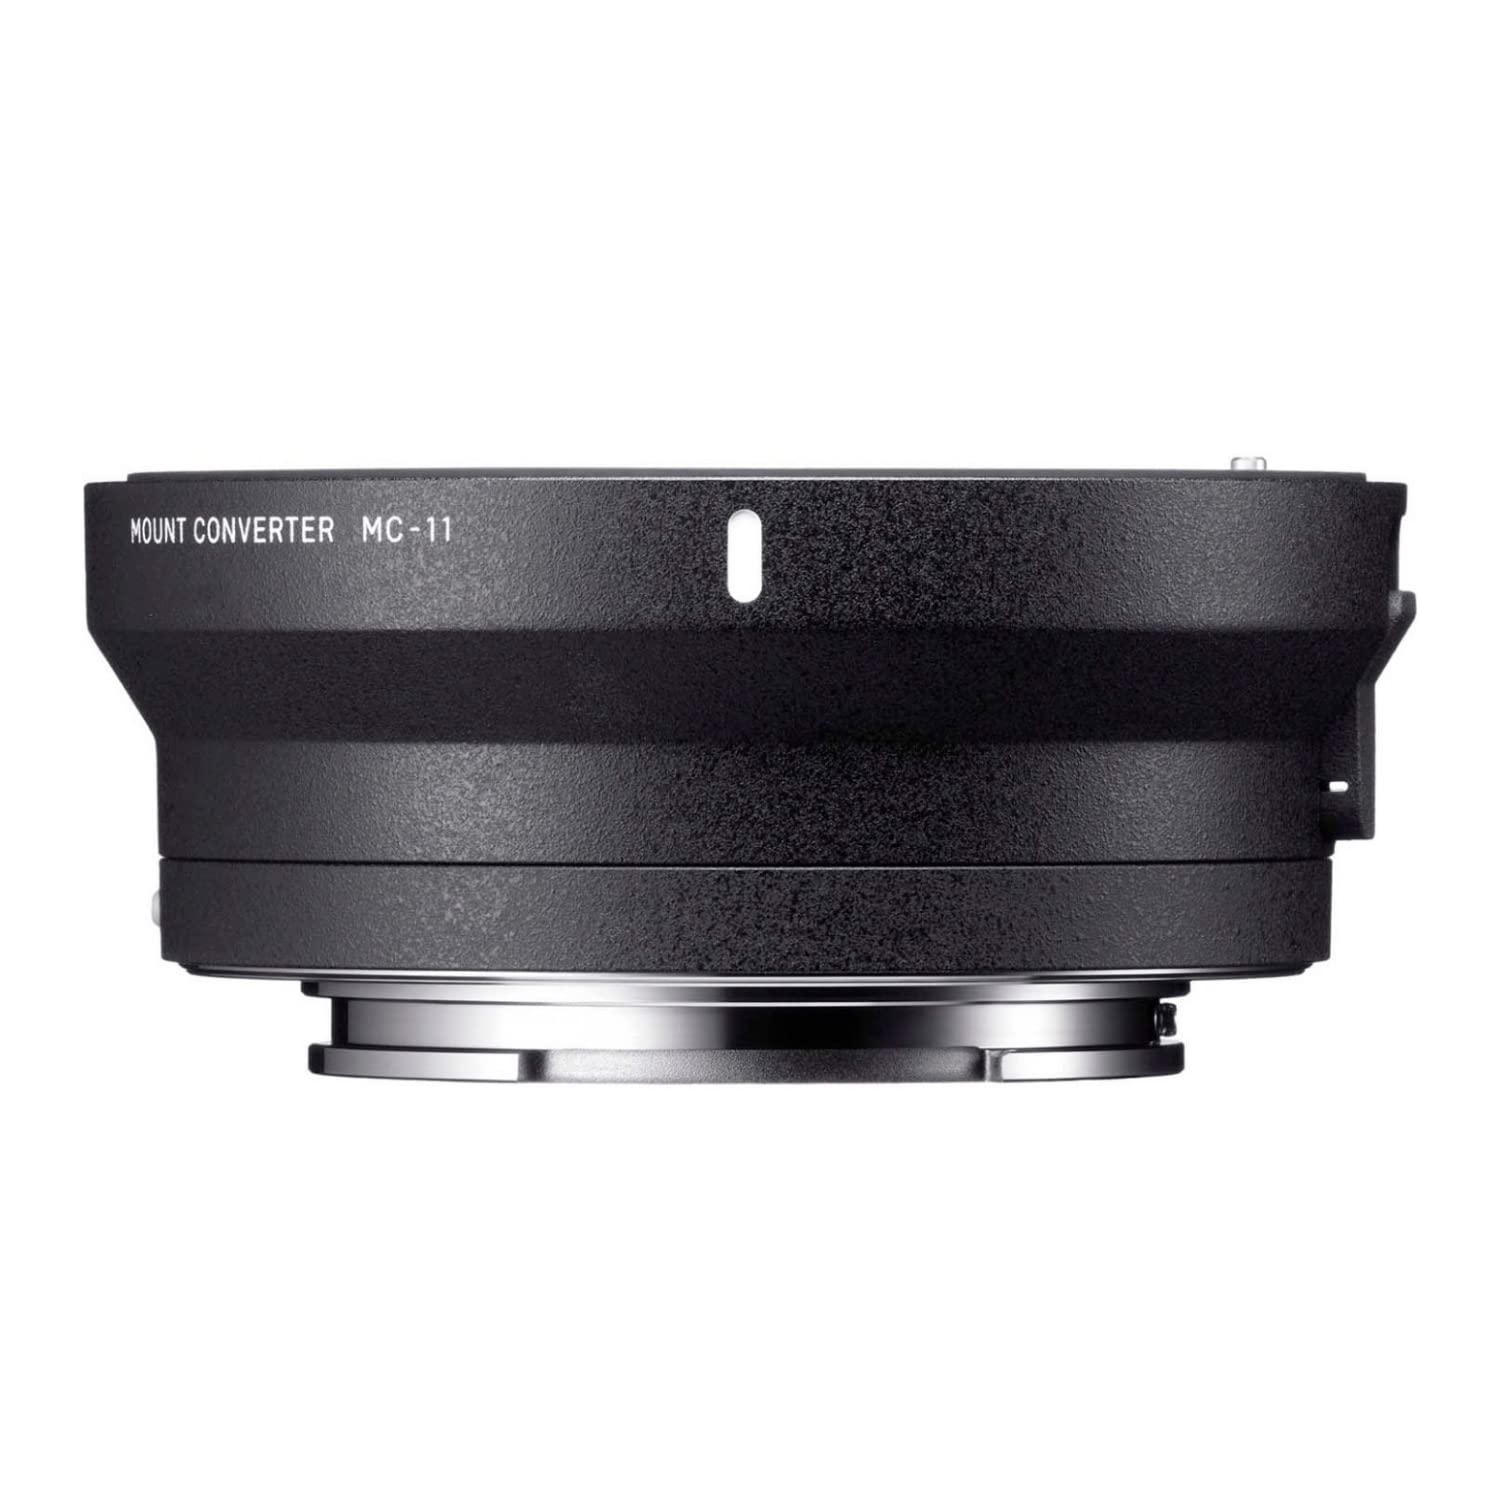 Sigma 89E965 Mount Converter MC-11 für Global Vision Produkte mit Canon Ef Objektivbajonett für Sony E-Mount-Kameras